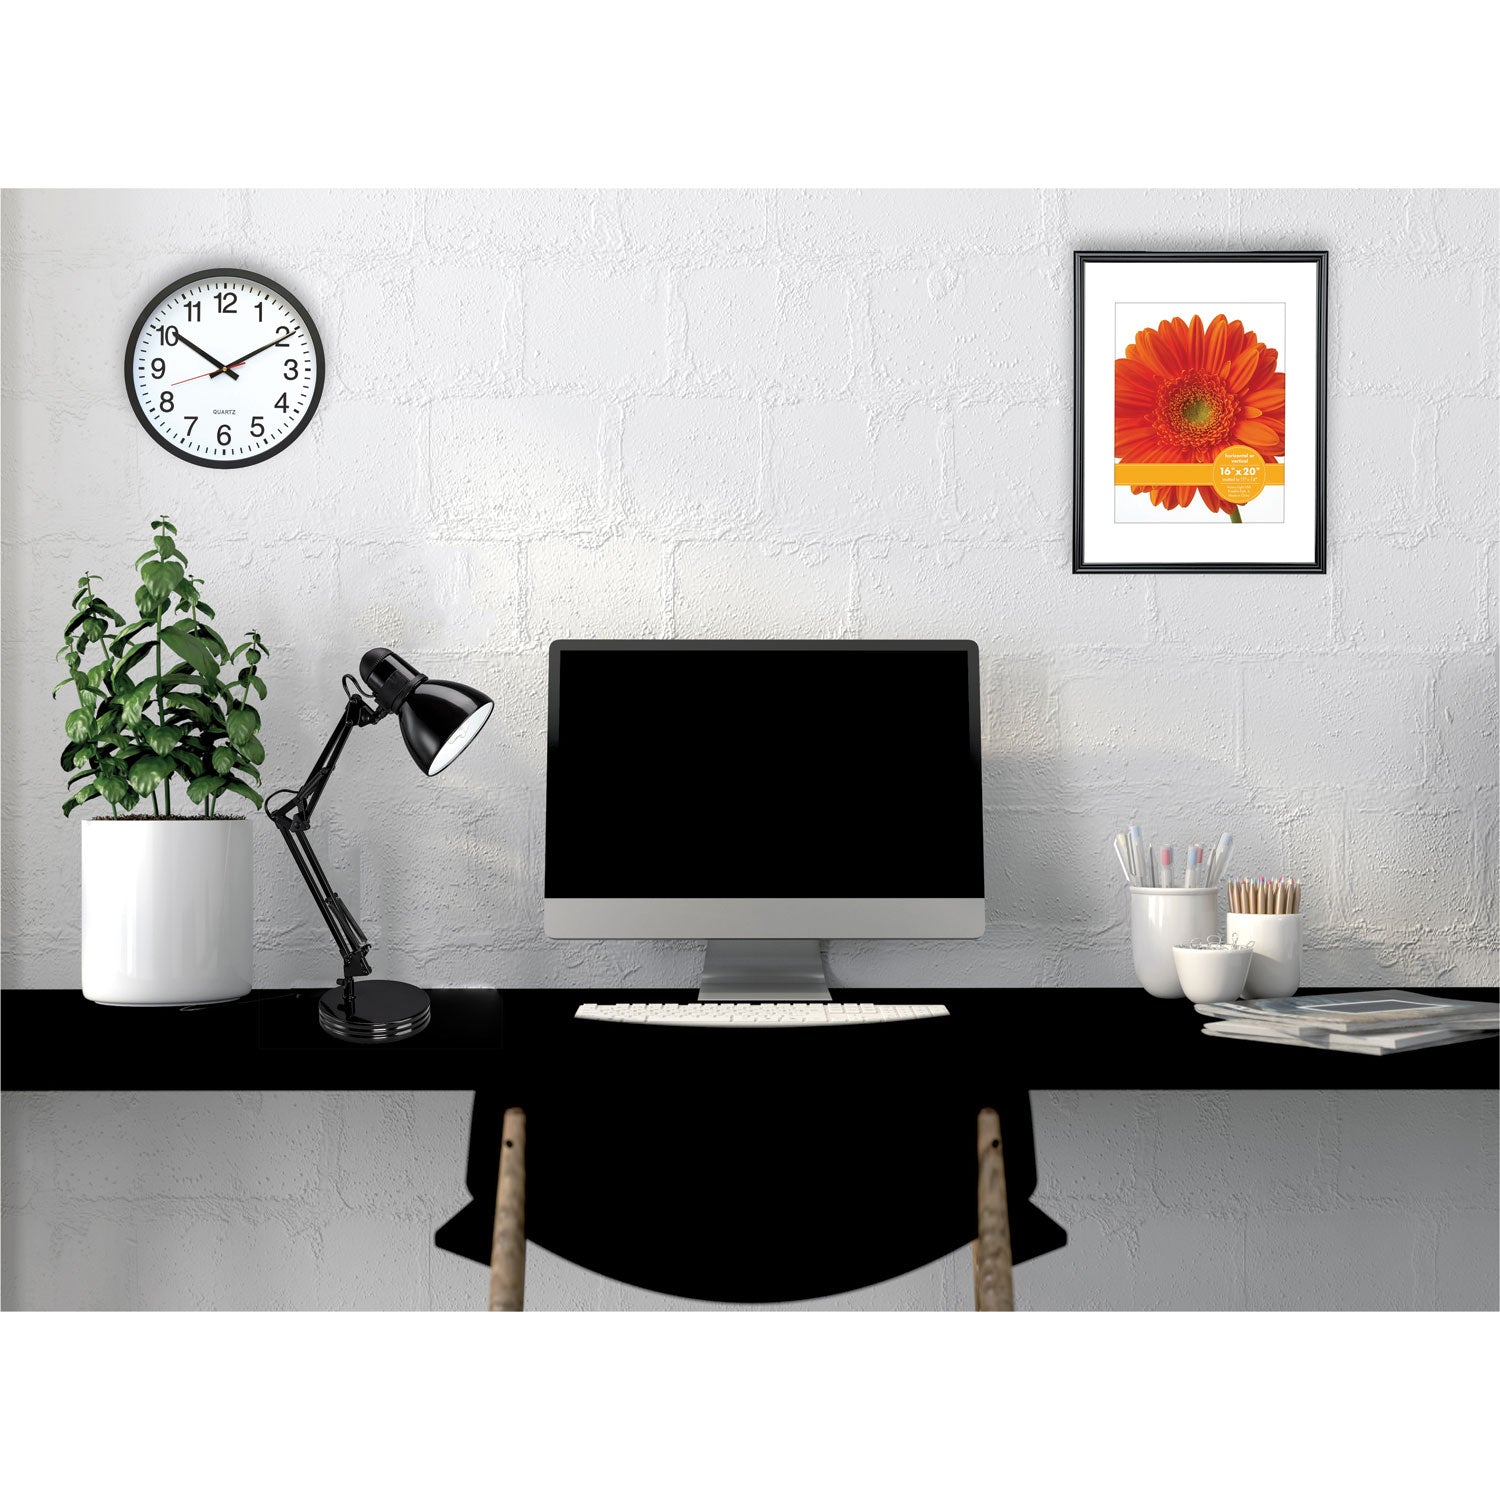 architect-desk-lamp-adjustable-arm-675w-x-115d-x-22h-black_alelmp603b - 4